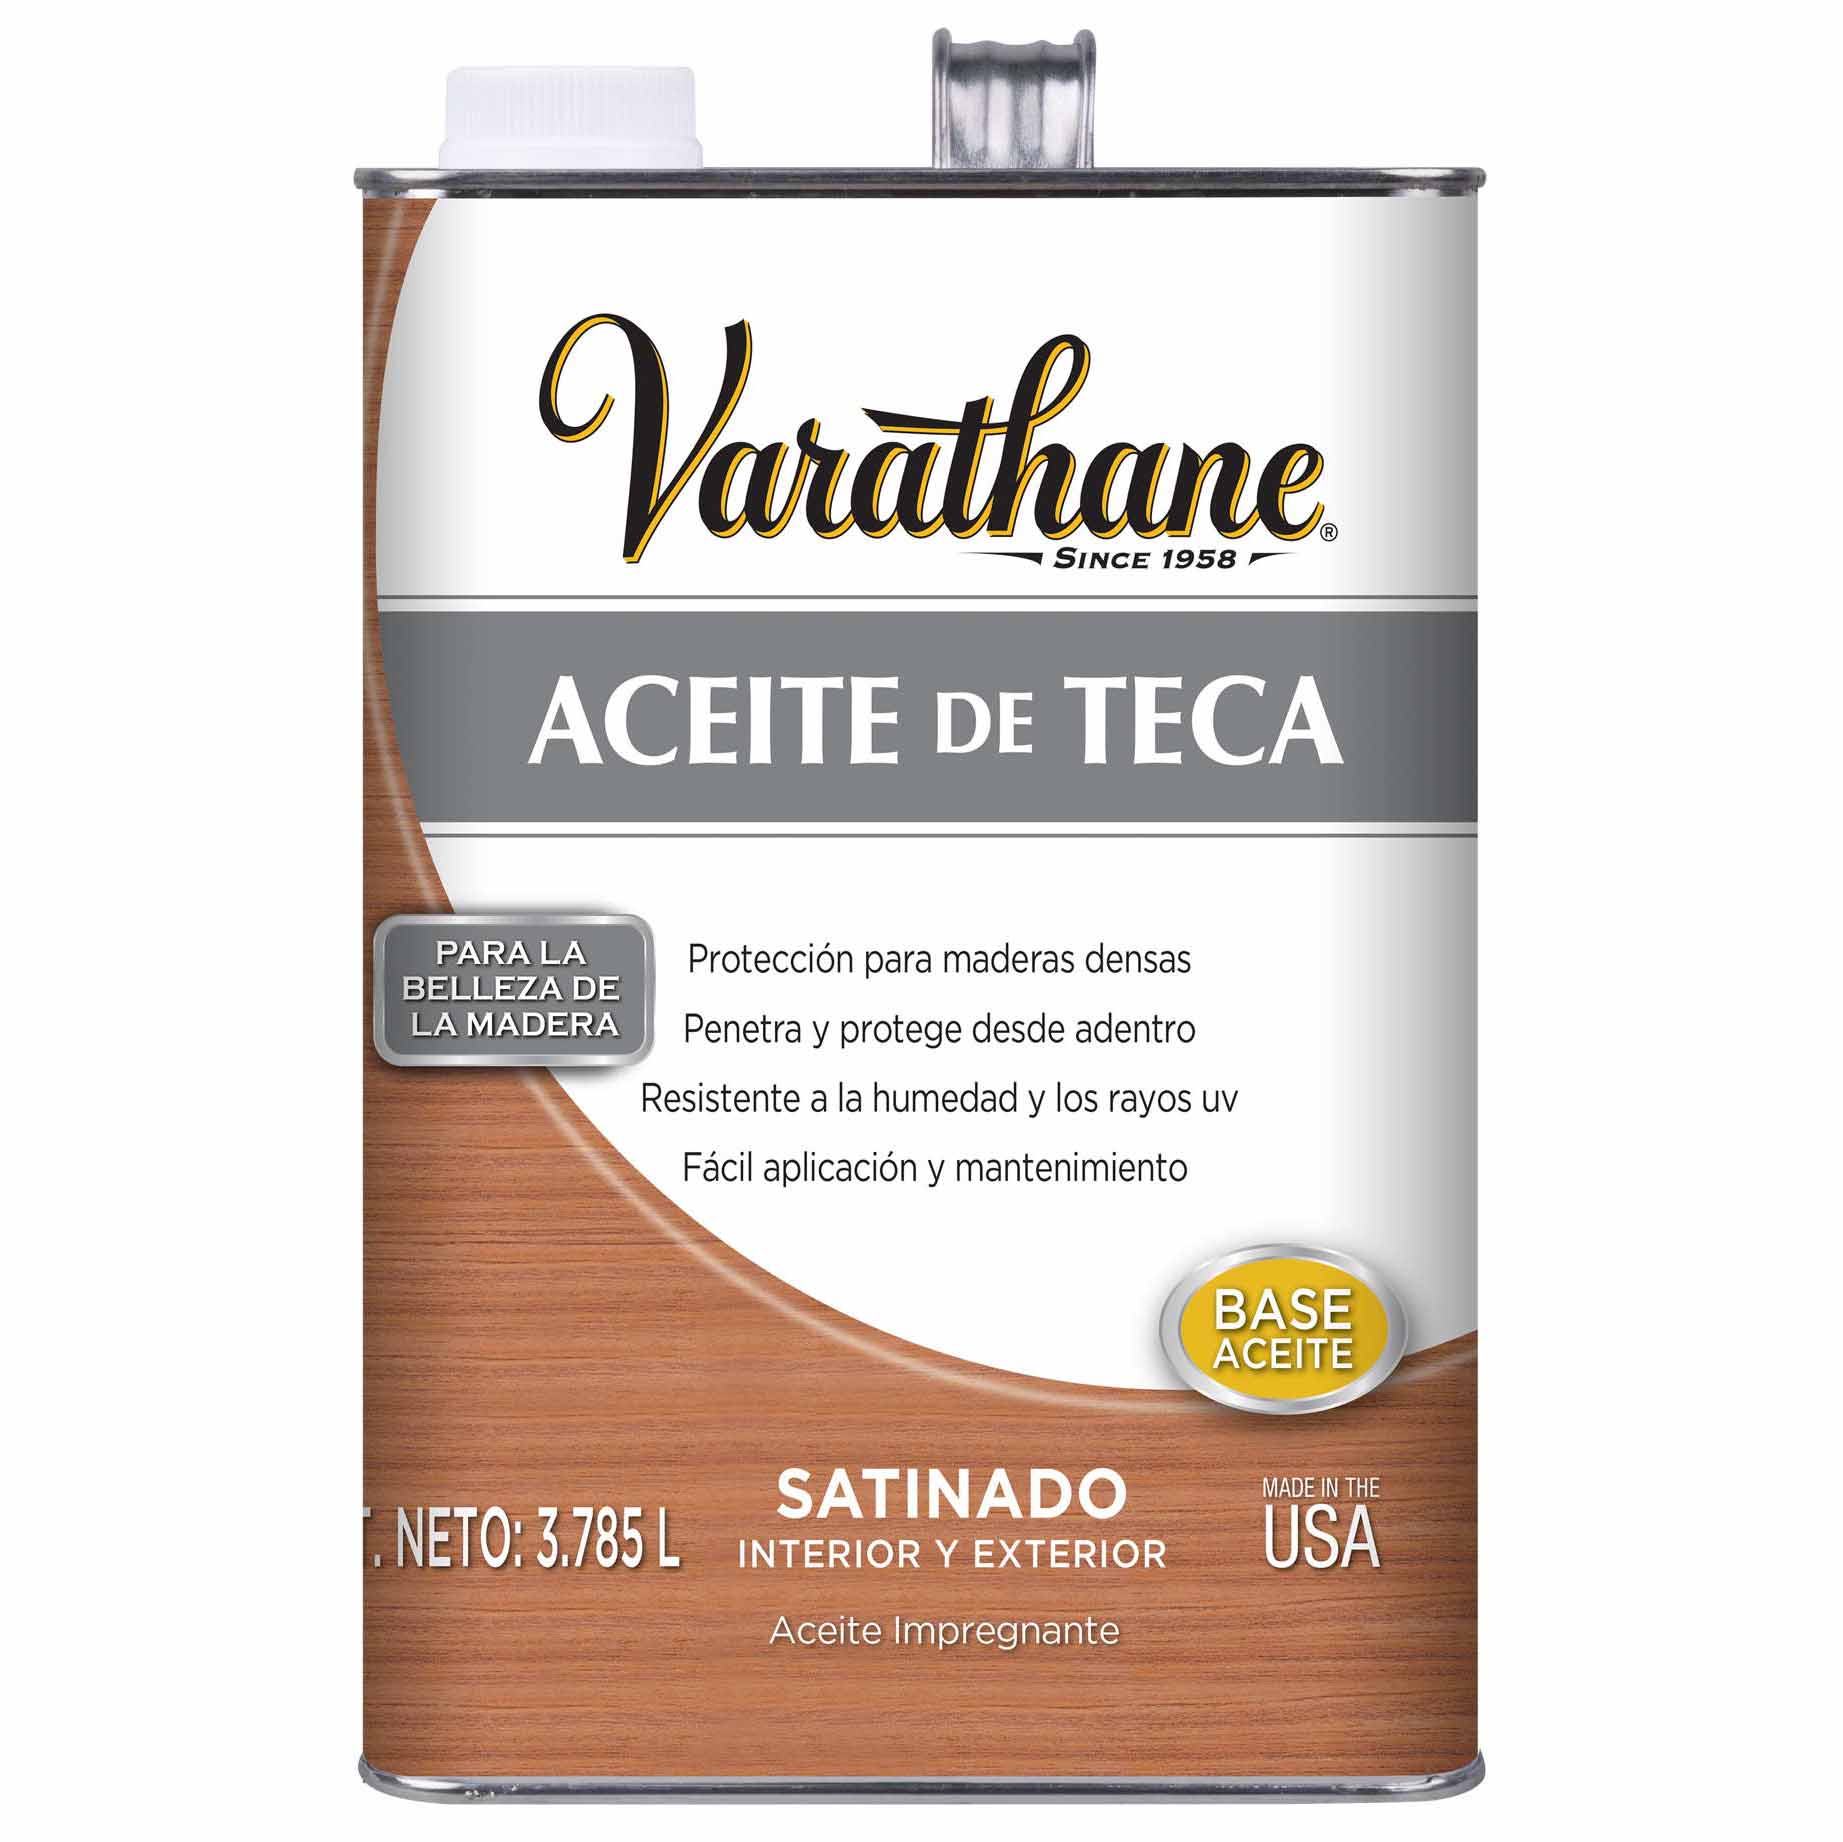 Varathane Aceite de Teca